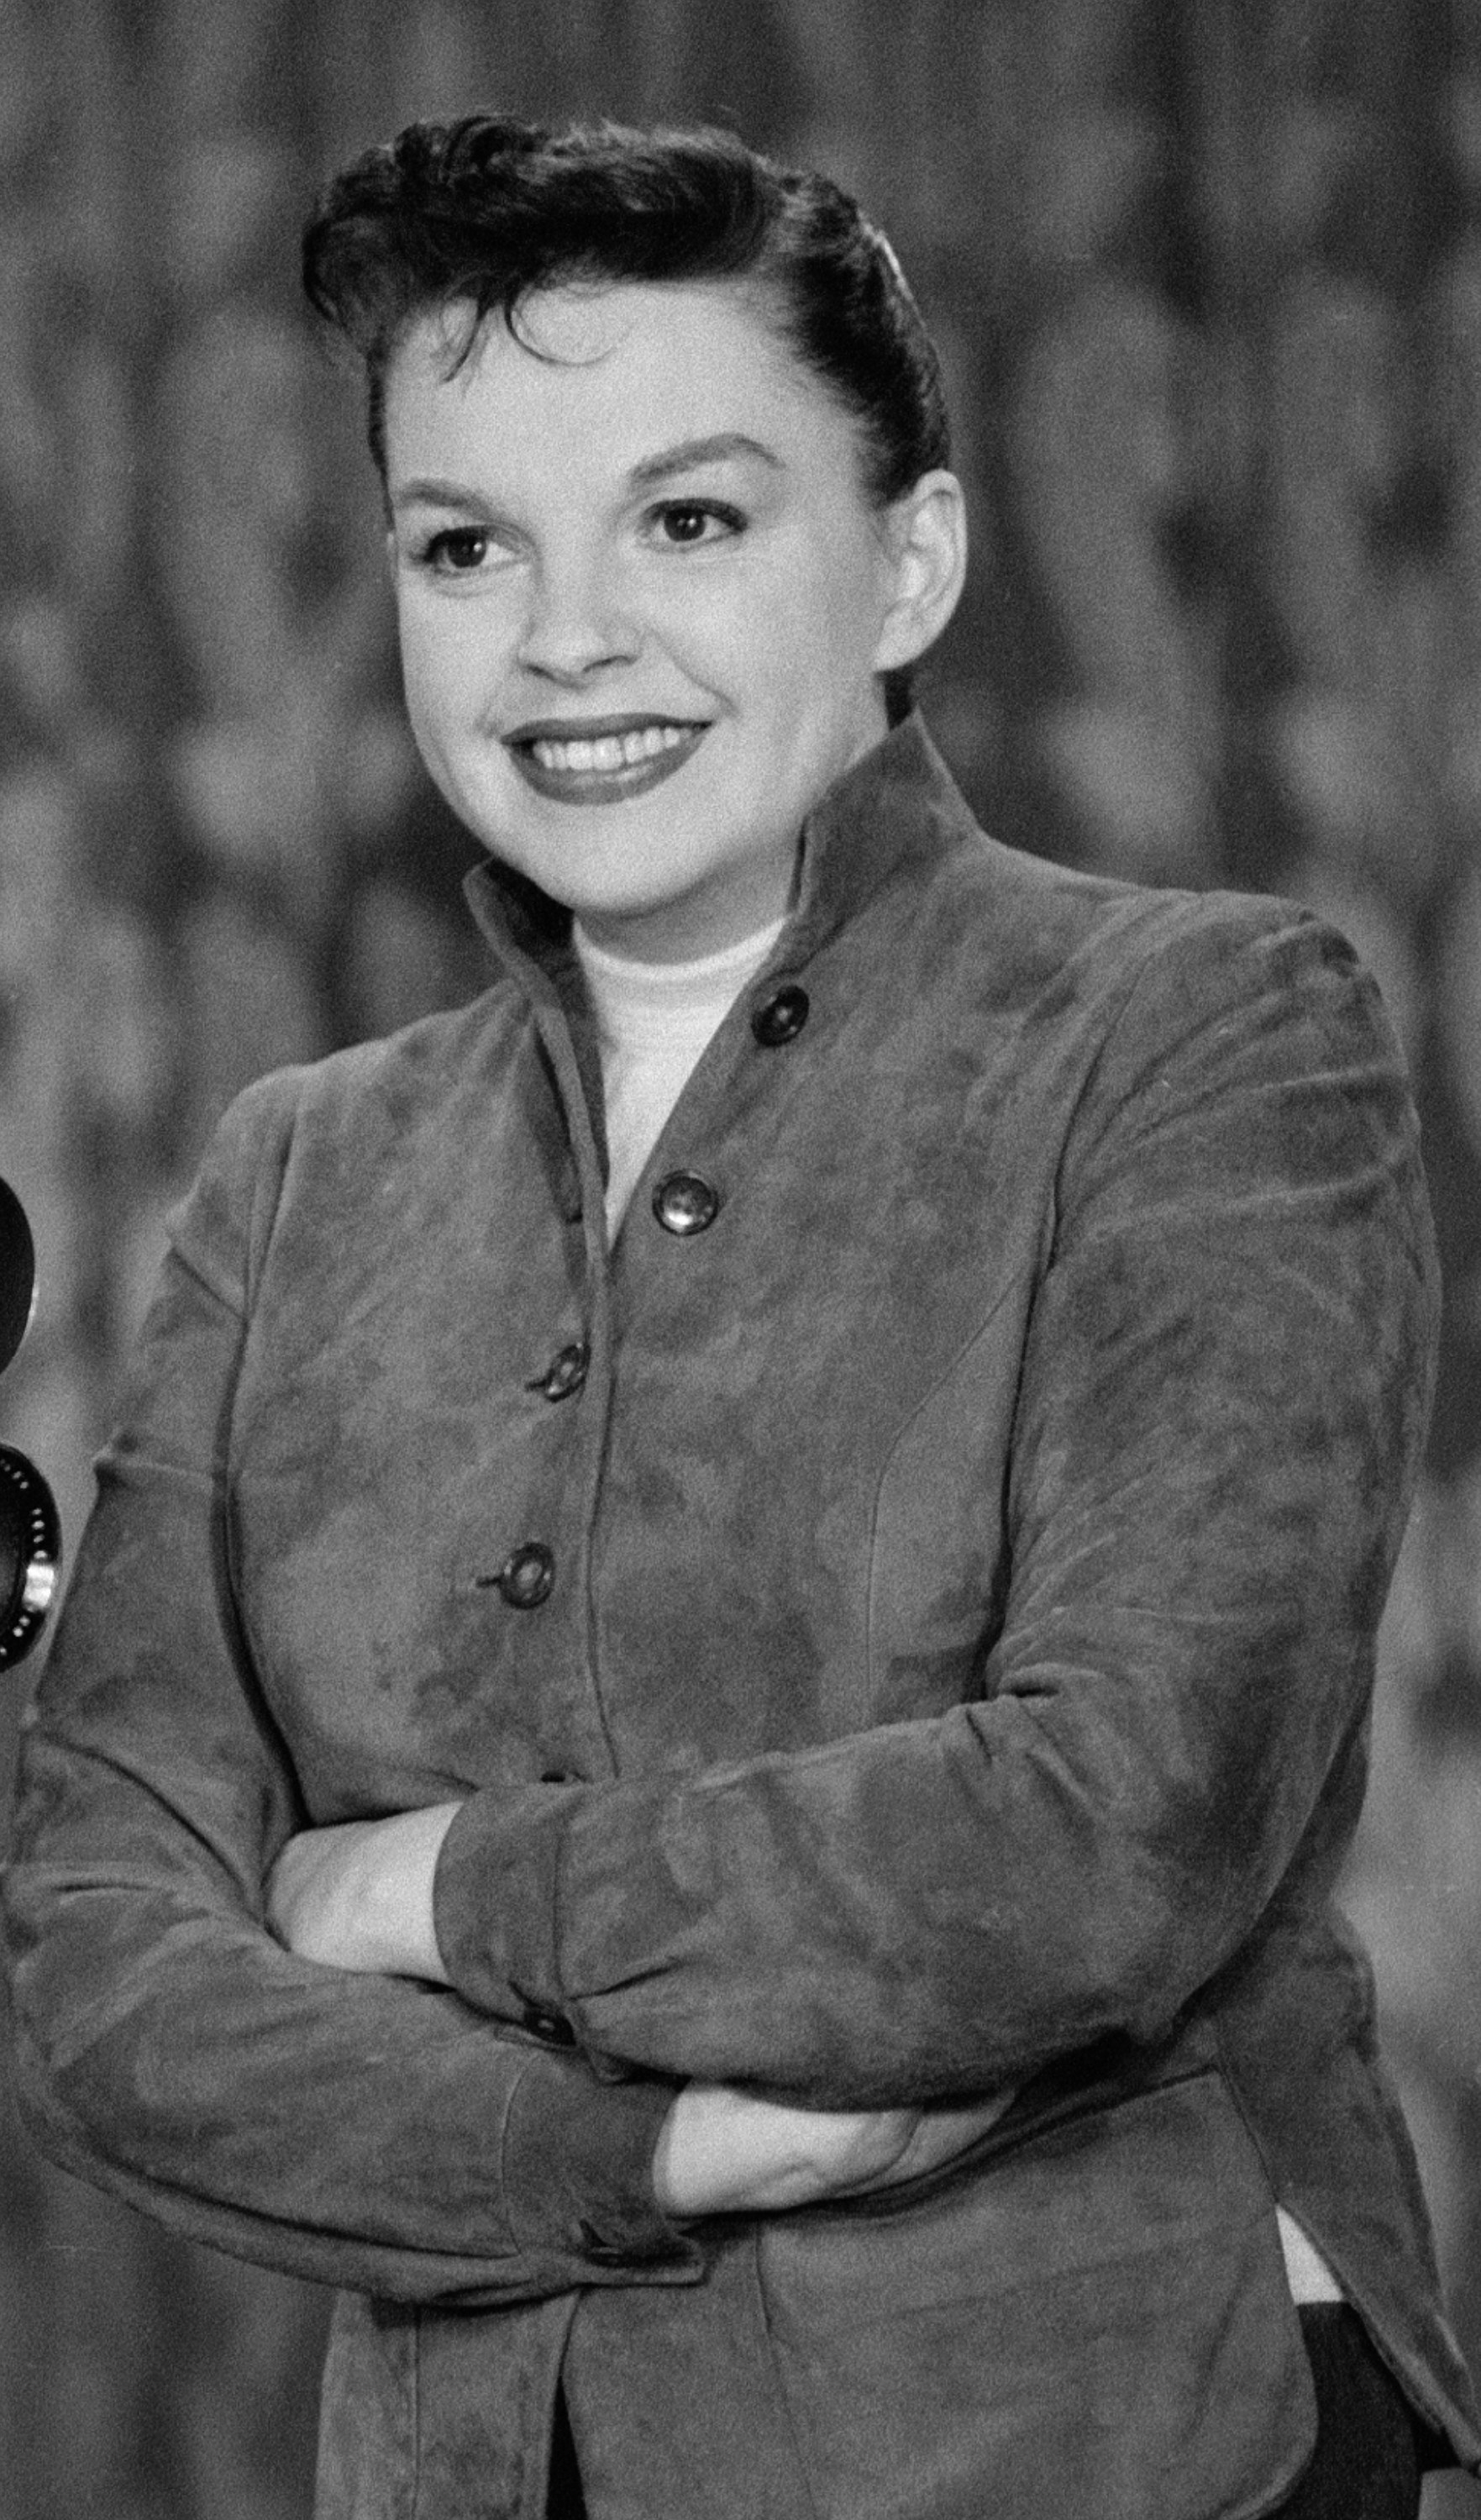 Garland en 1955